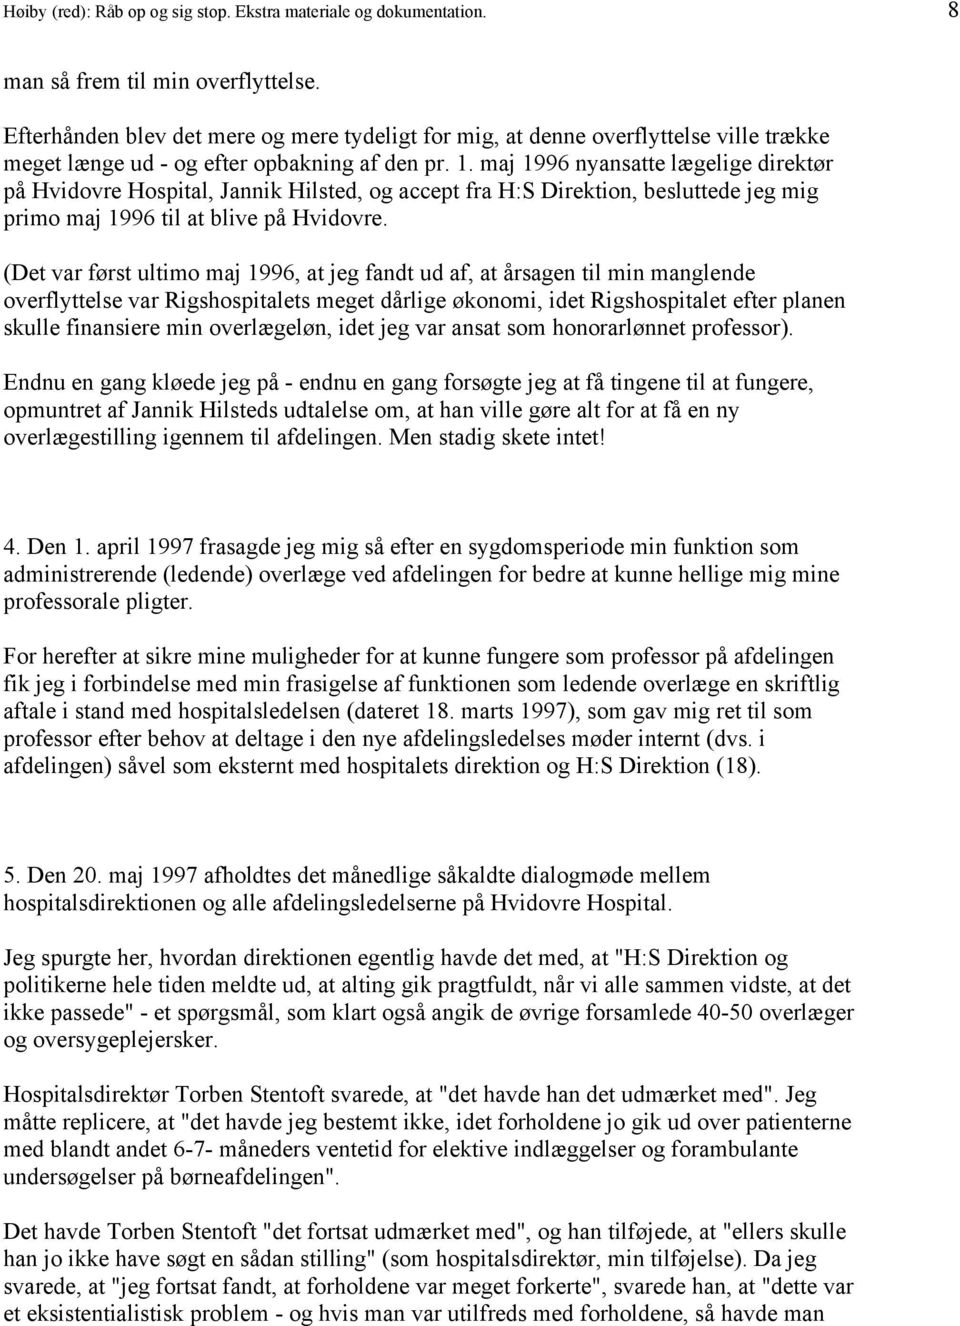 maj 1996 nyansatte lægelige direktør på Hvidovre Hospital, Jannik Hilsted, og accept fra H:S Direktion, besluttede jeg mig primo maj 1996 til at blive på Hvidovre.